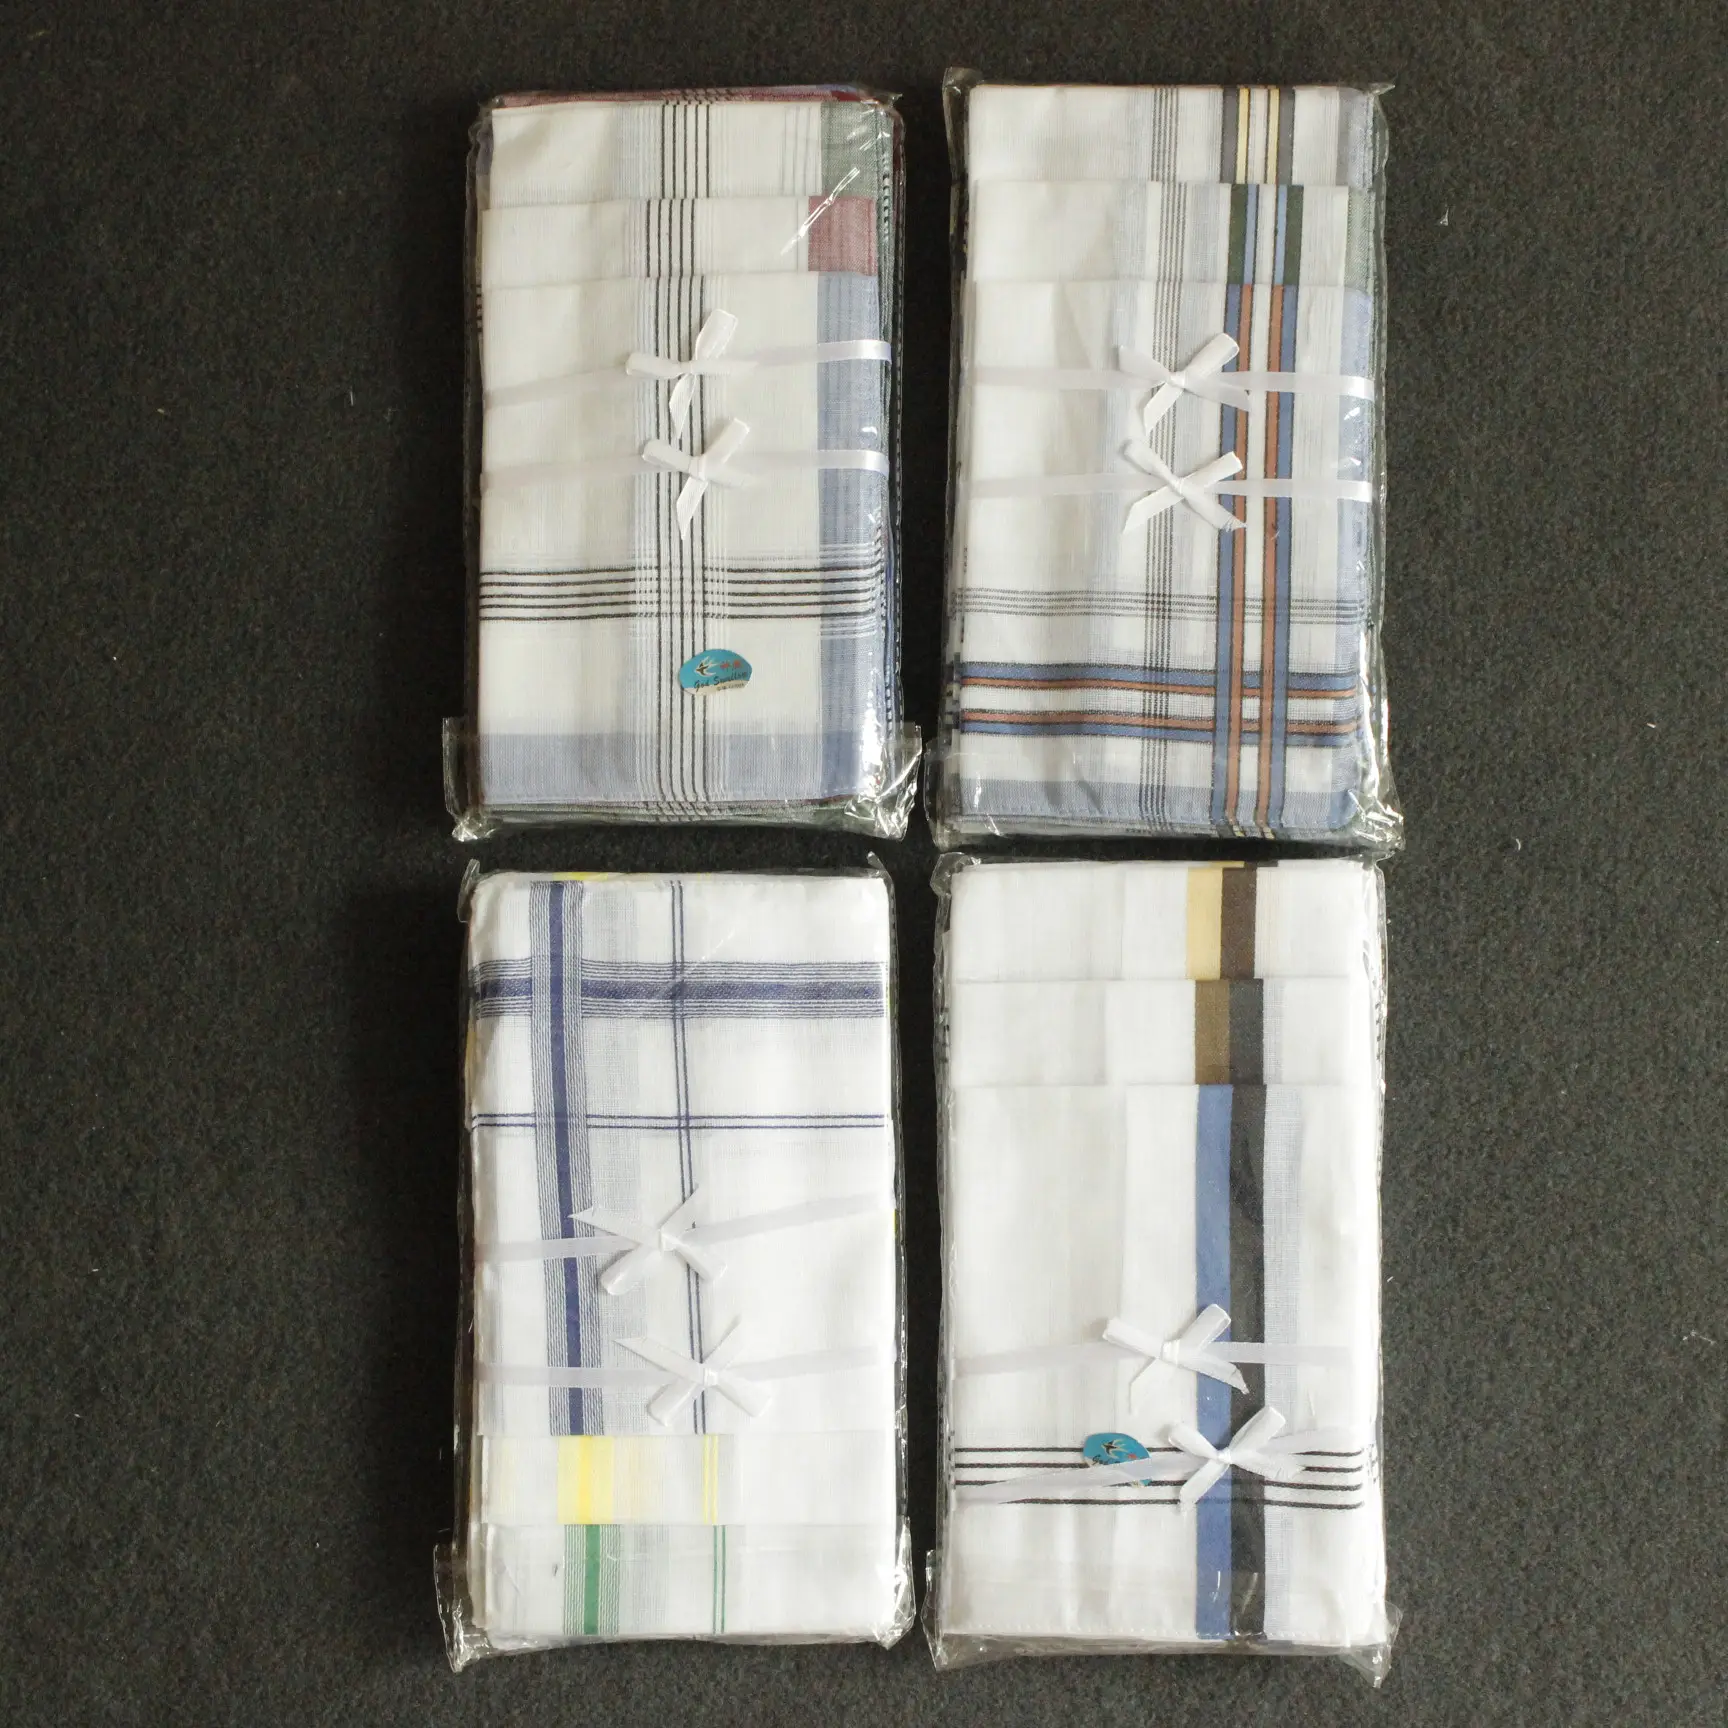 good quality wholesale cheap cotton stripe men's handkerchief